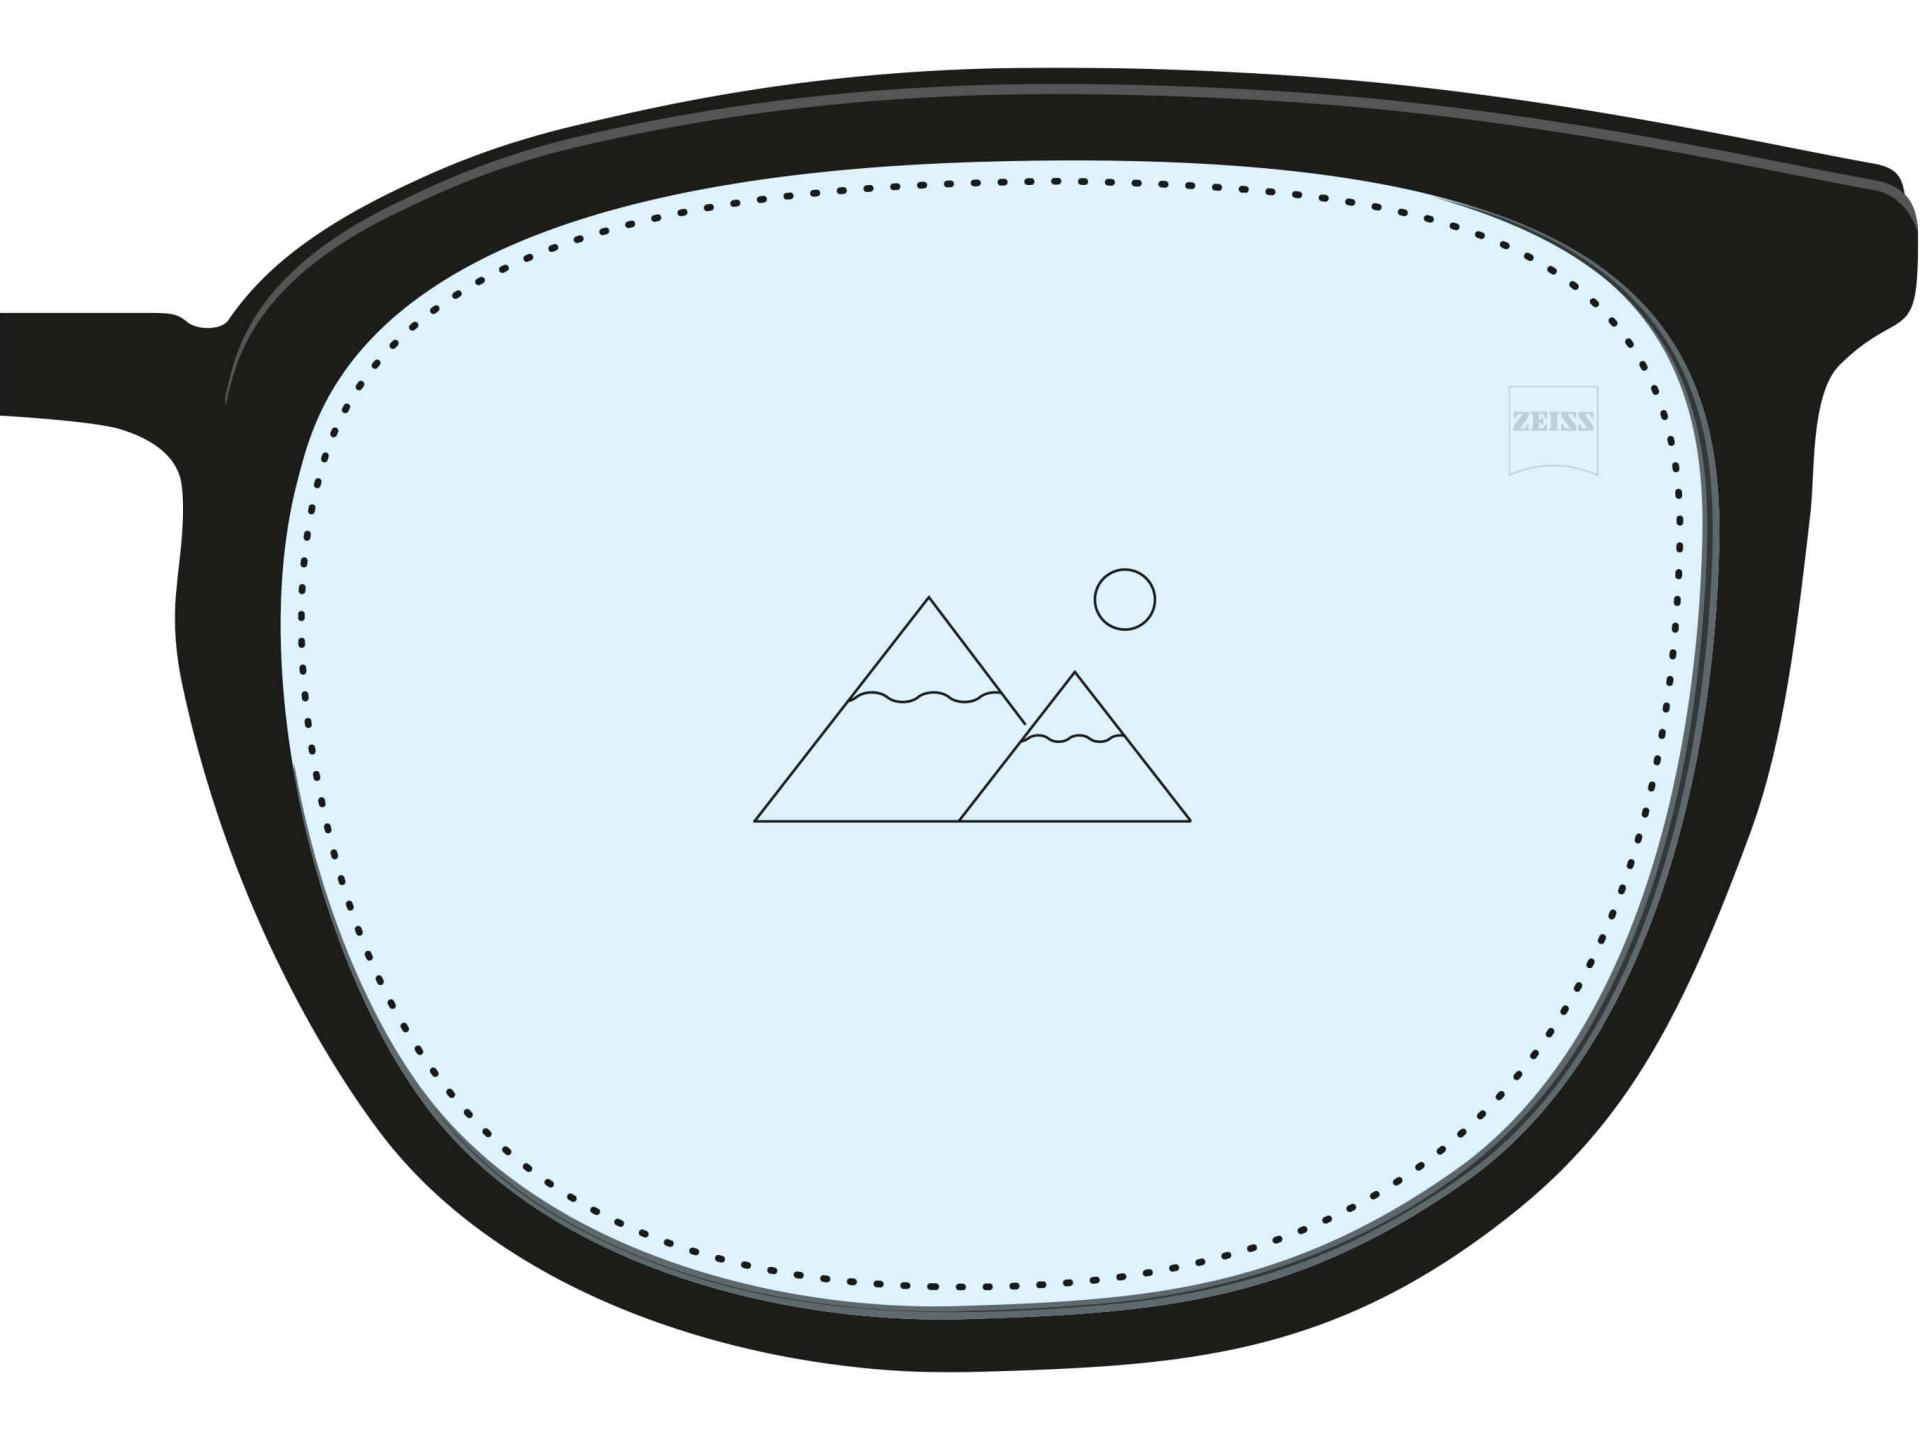 Disegno di una lente monofocale. È completamente riempita di luce blu e un&apos;icona singola mostra che ha una correzione per una sola distanza.